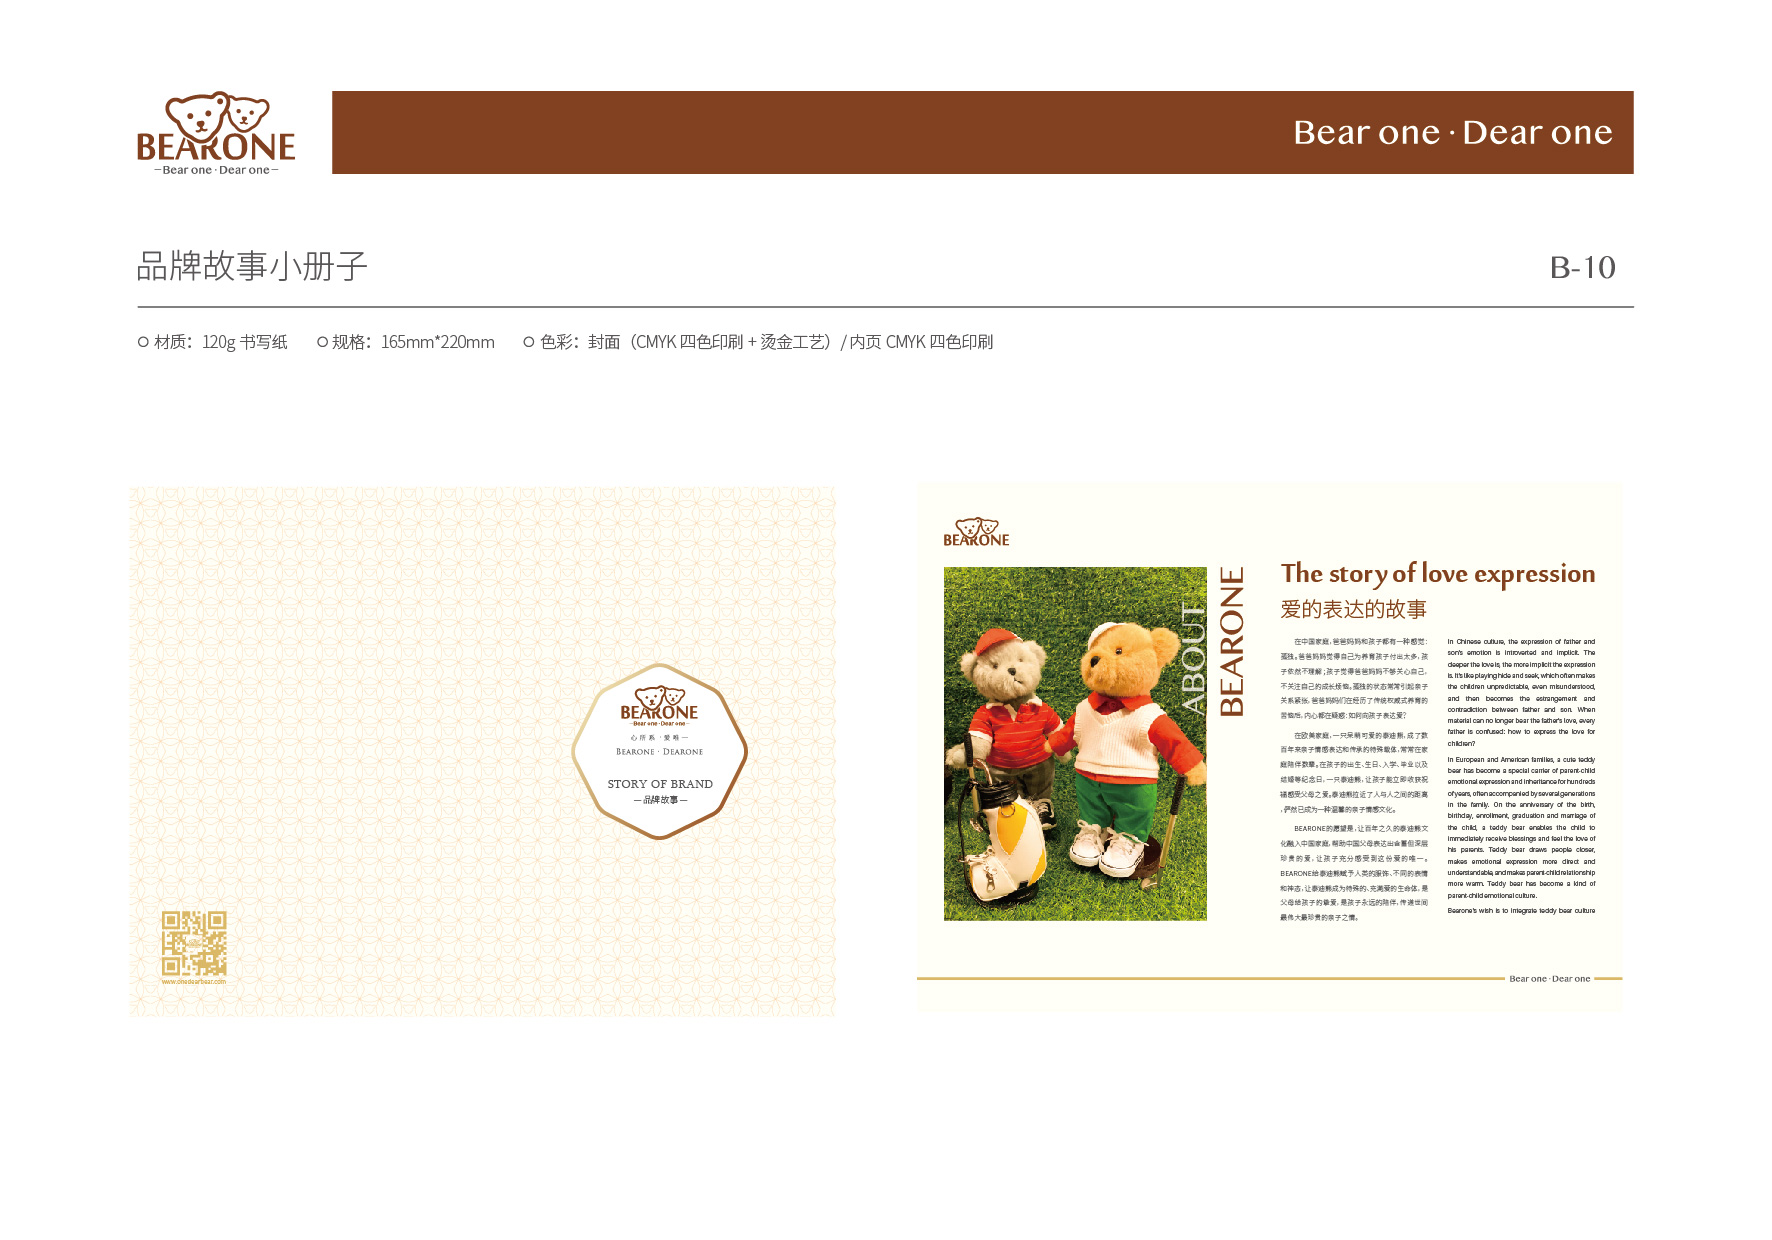 高端礼品包装设计作品案例欣赏-深圳BearOne泰迪熊